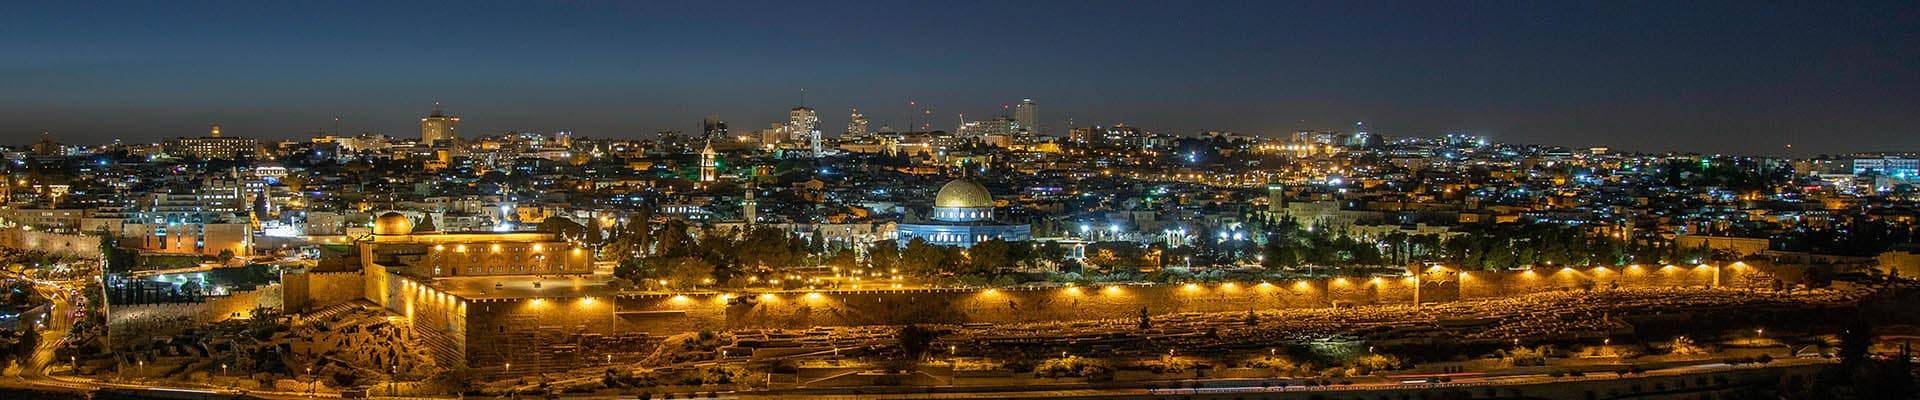 5 אטרקציות באזור ירושלים | מרכז ציפורי | מרכז פיתוח מנהיגות | בית הארחה בירושלים